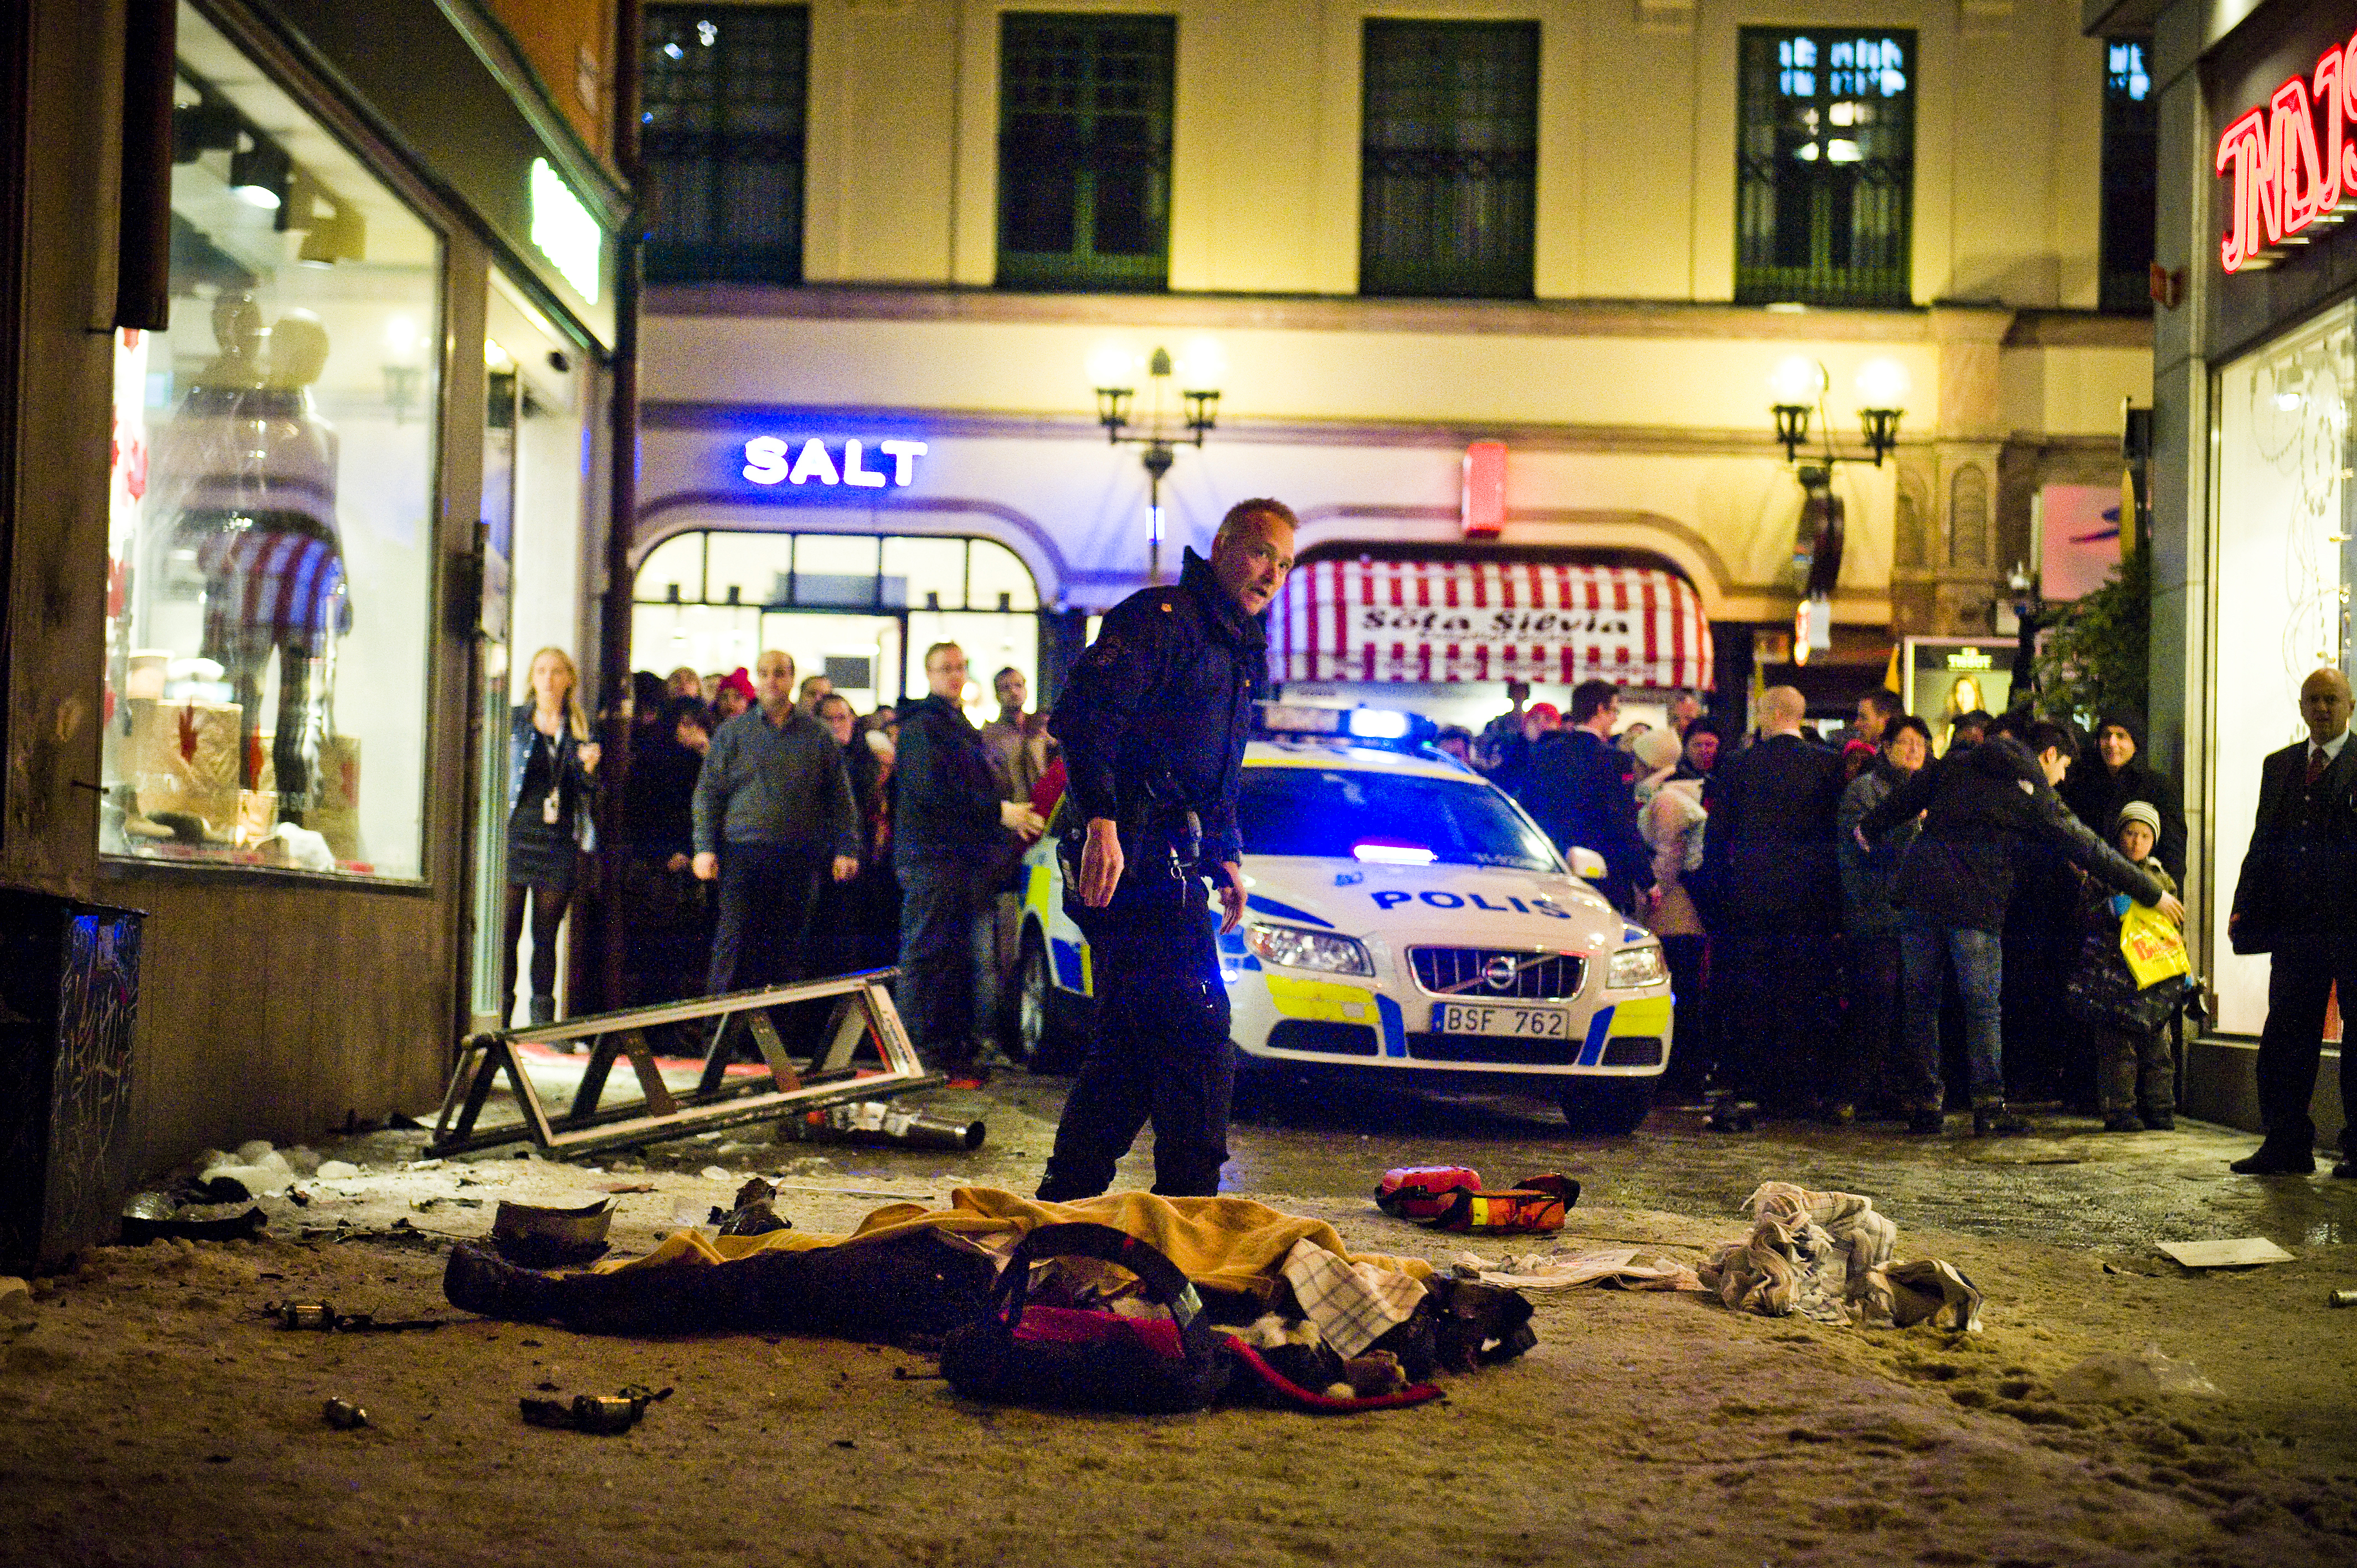 11/12/2010. En självmordsbombare spränger sin bil och sig själv mitt i centrala Stockholm. Attentatet var ändå misslyckat då bara gärningsmannen dog, trots att bomberna bedömdes kunna ha tagit ett stort antal liv om de detonerat. 